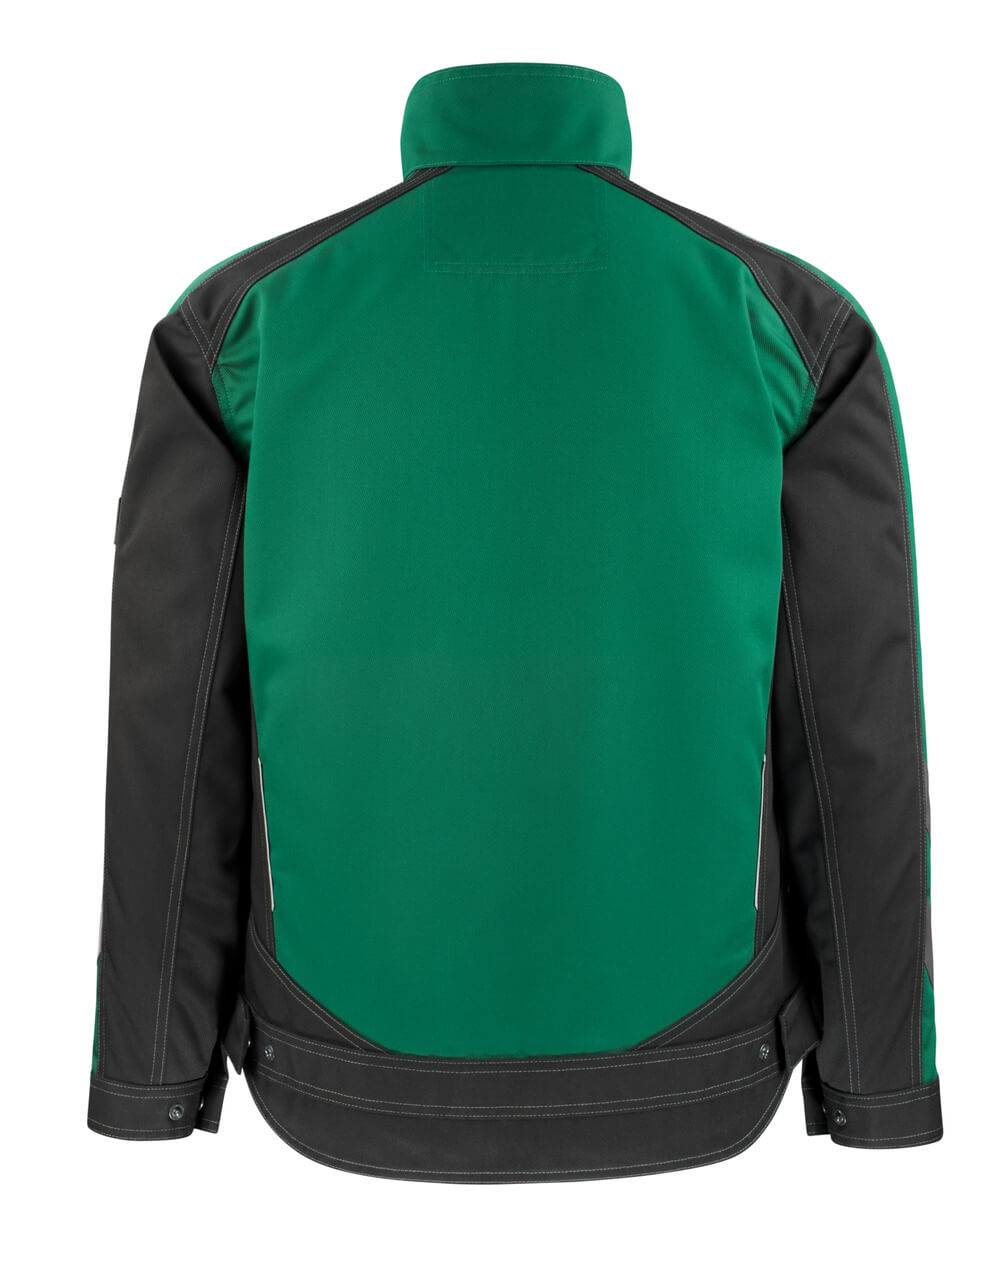 Mascot UNIQUE  Mainz Jacket 12009 green/black